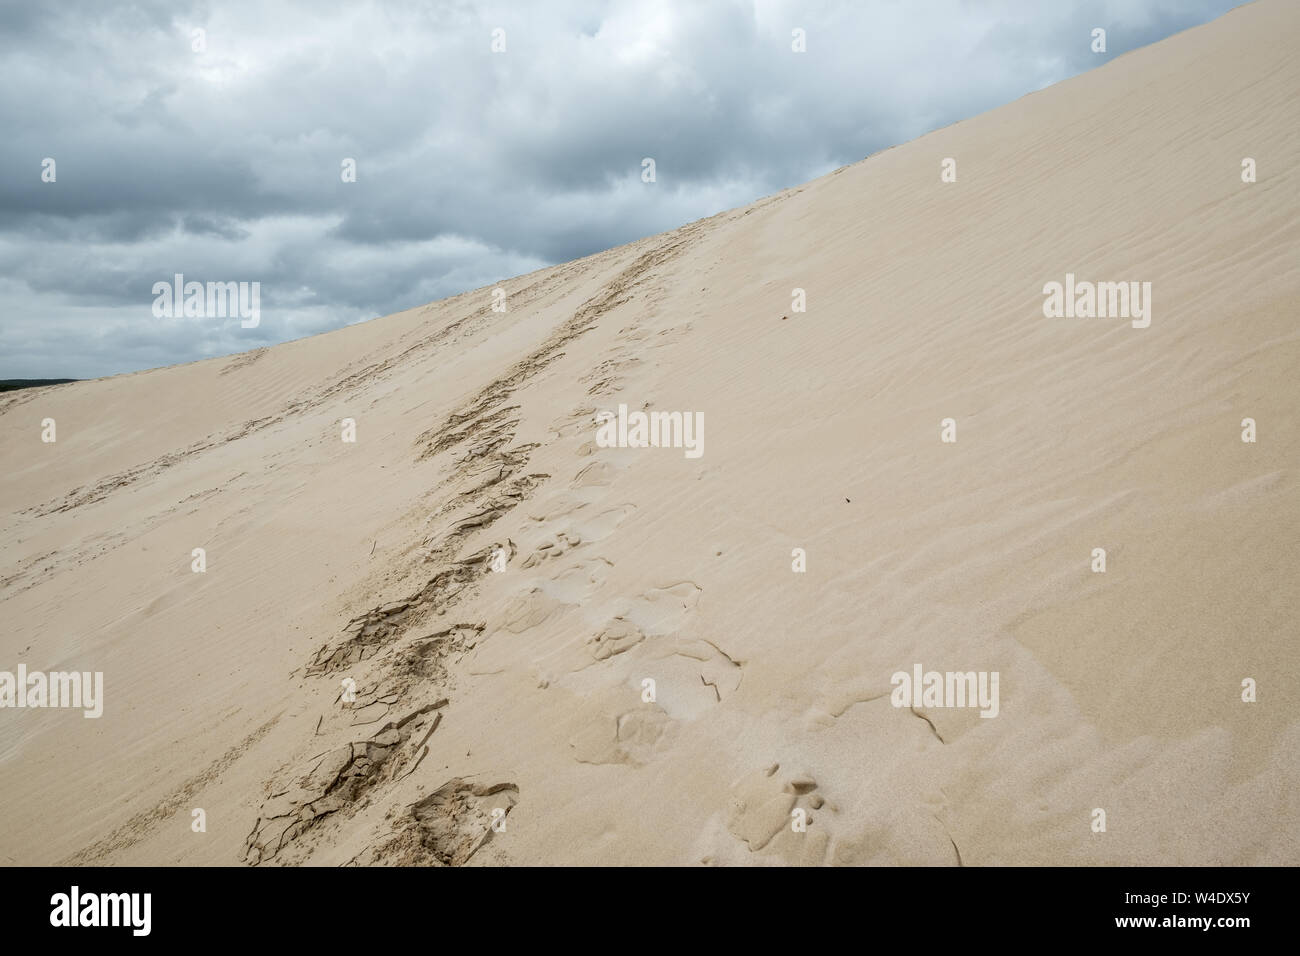 Zig-zag de piste conduit vers le haut des dunes de sable. Jour nuageux et humide sur Kangaroo Island, Australie du Sud Banque D'Images